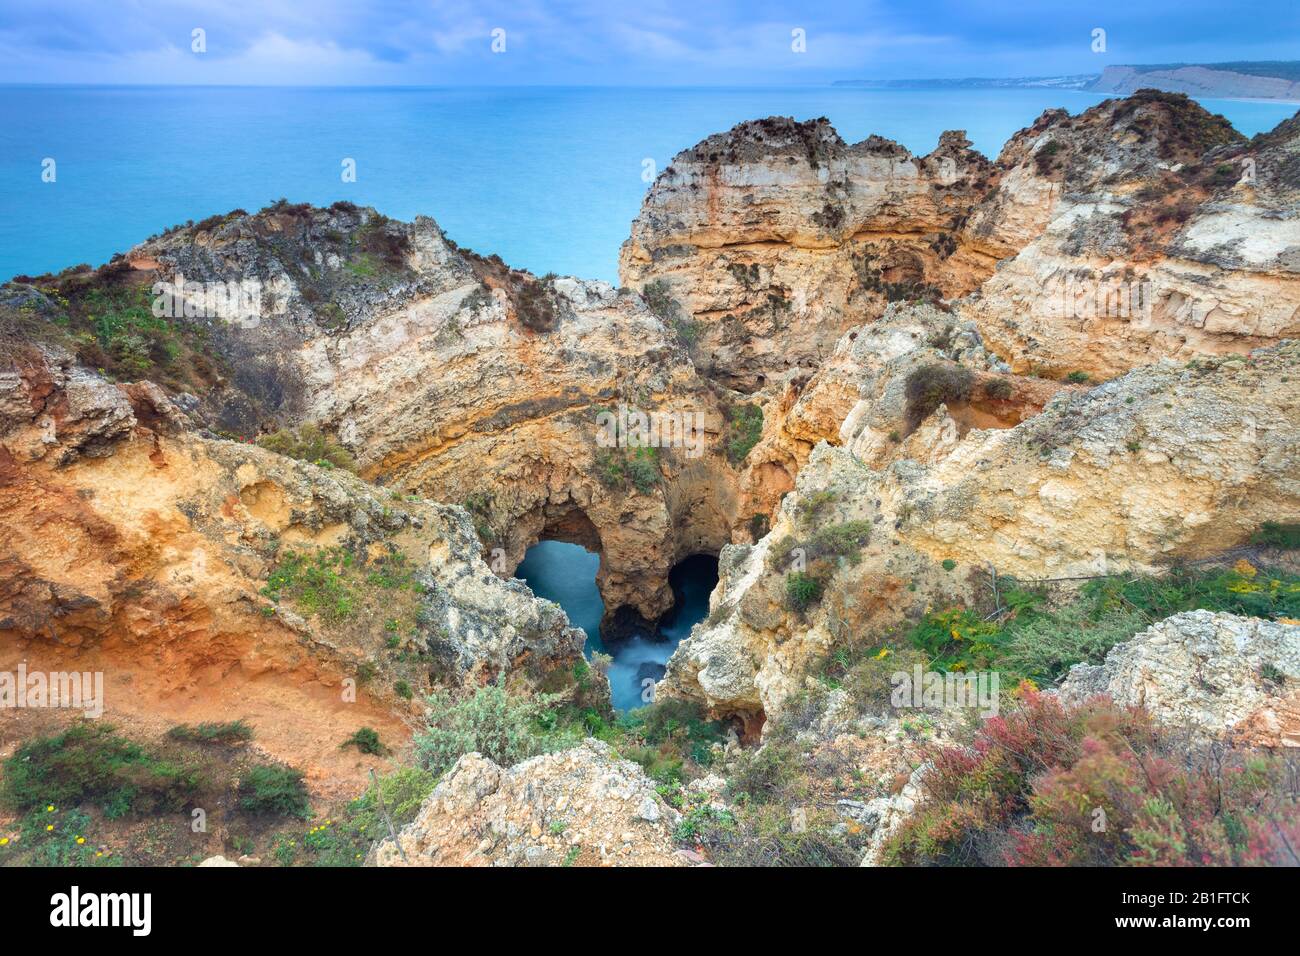 Alba nuvoloso alle scogliere gialle e rosse di Ponta da Piedade con una grotta a forma di cuore. Lagos, Algarve, Portogallo, Europa. Foto Stock